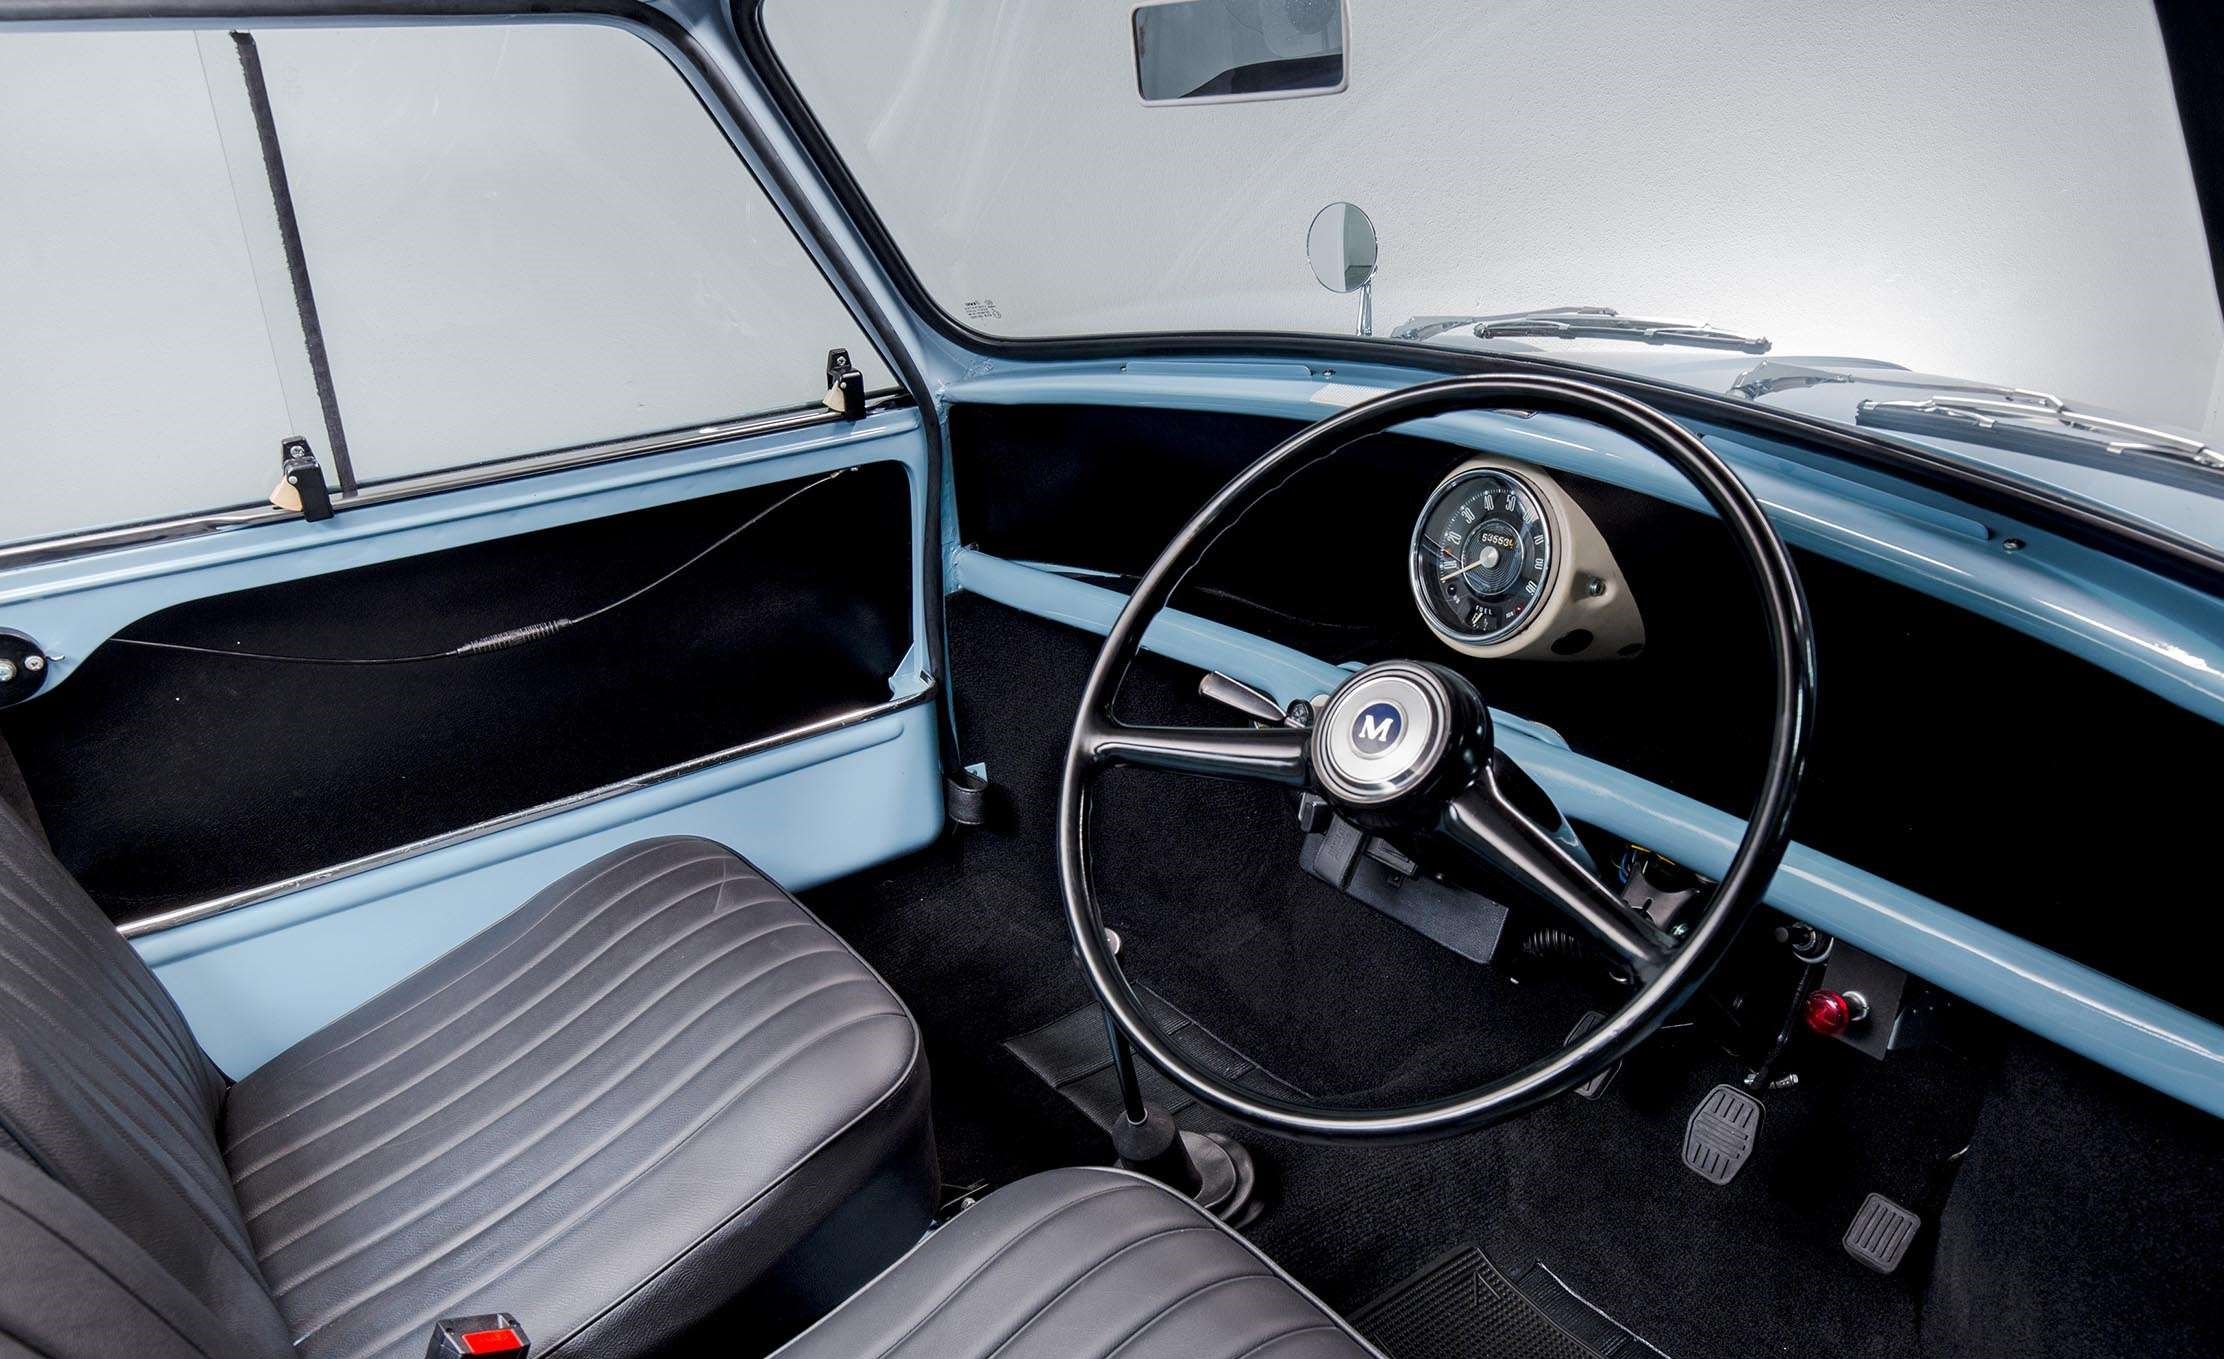 The interior of the Classic Mini Cooper S Pickup.